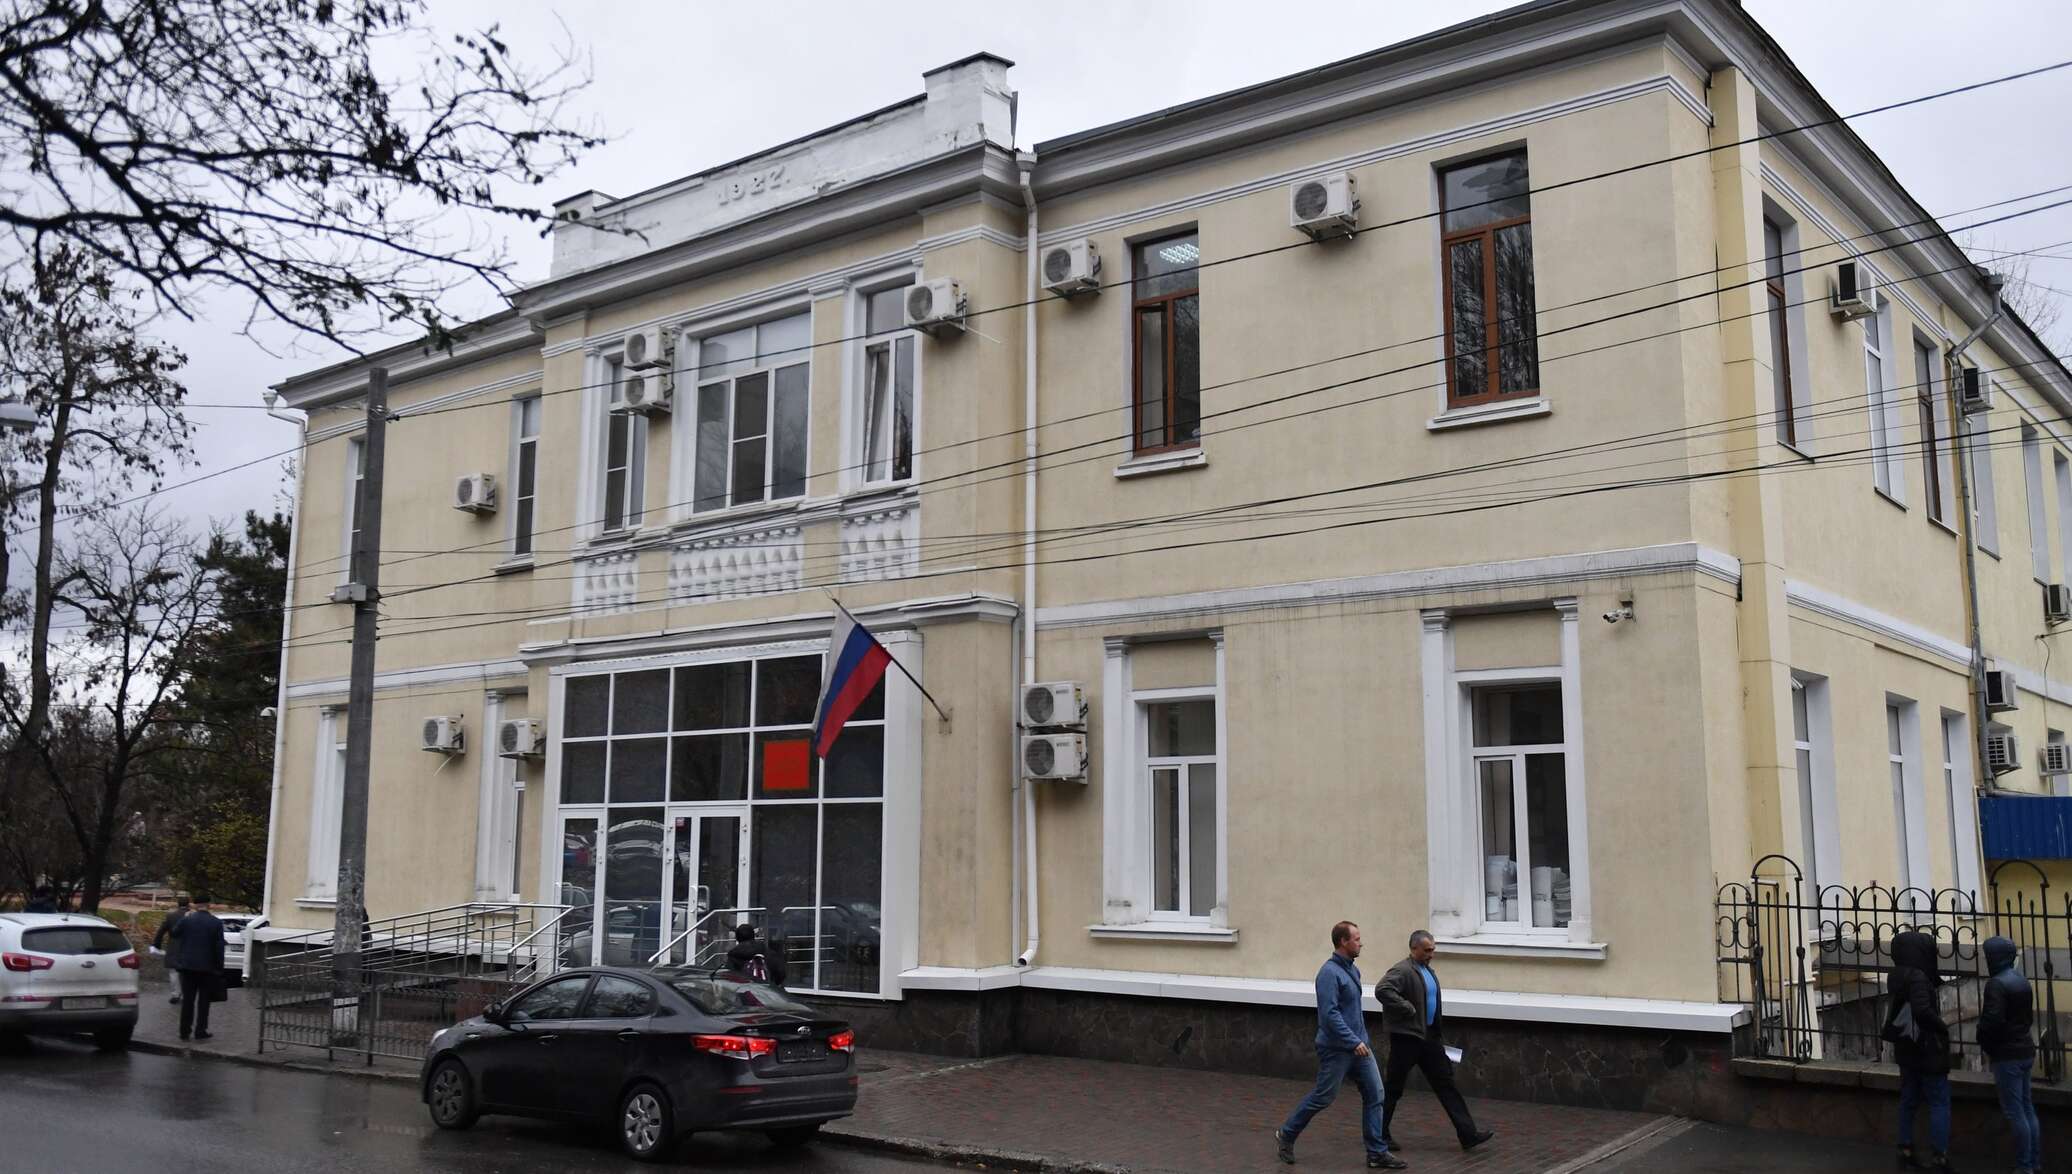 Сайт красногвардейского районного суда крыма